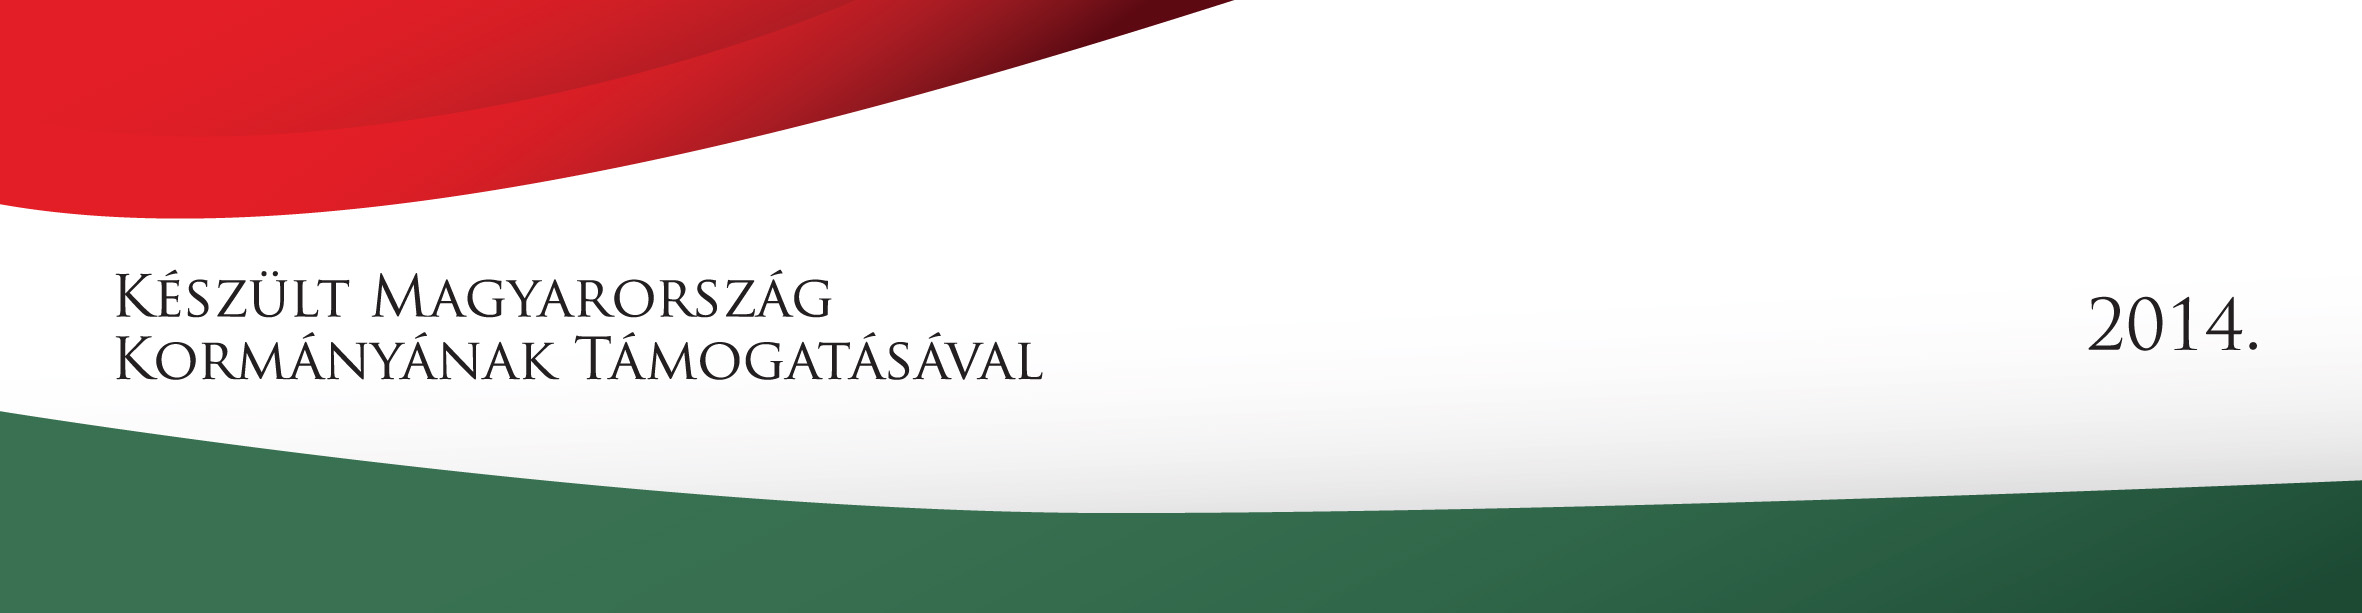 Készült Magyarország Kormányának Támogatásával 2014 logó